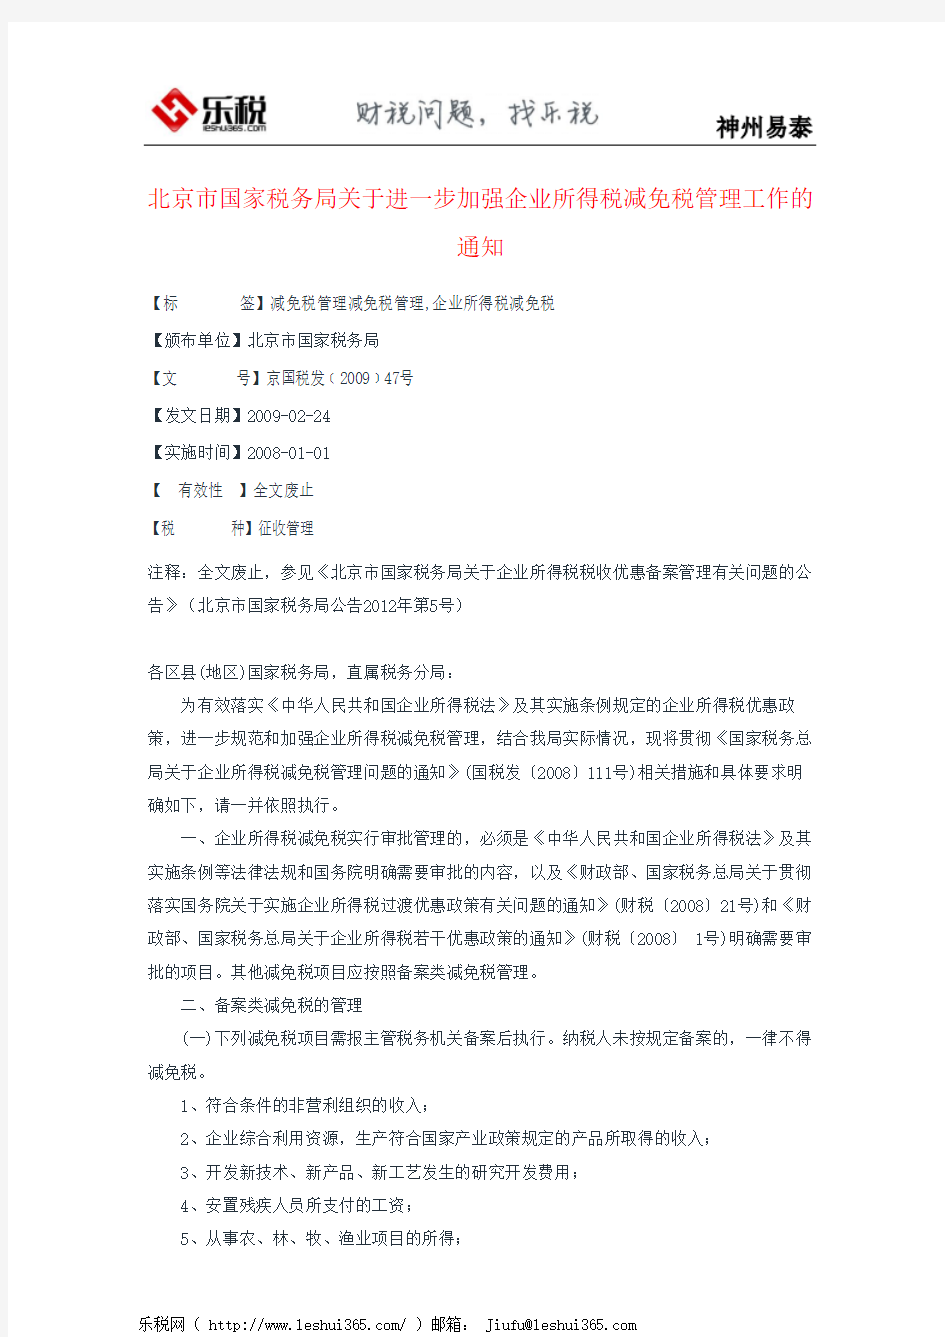 北京市国家税务局关于进一步加强企业所得税减免税管理工作的通知